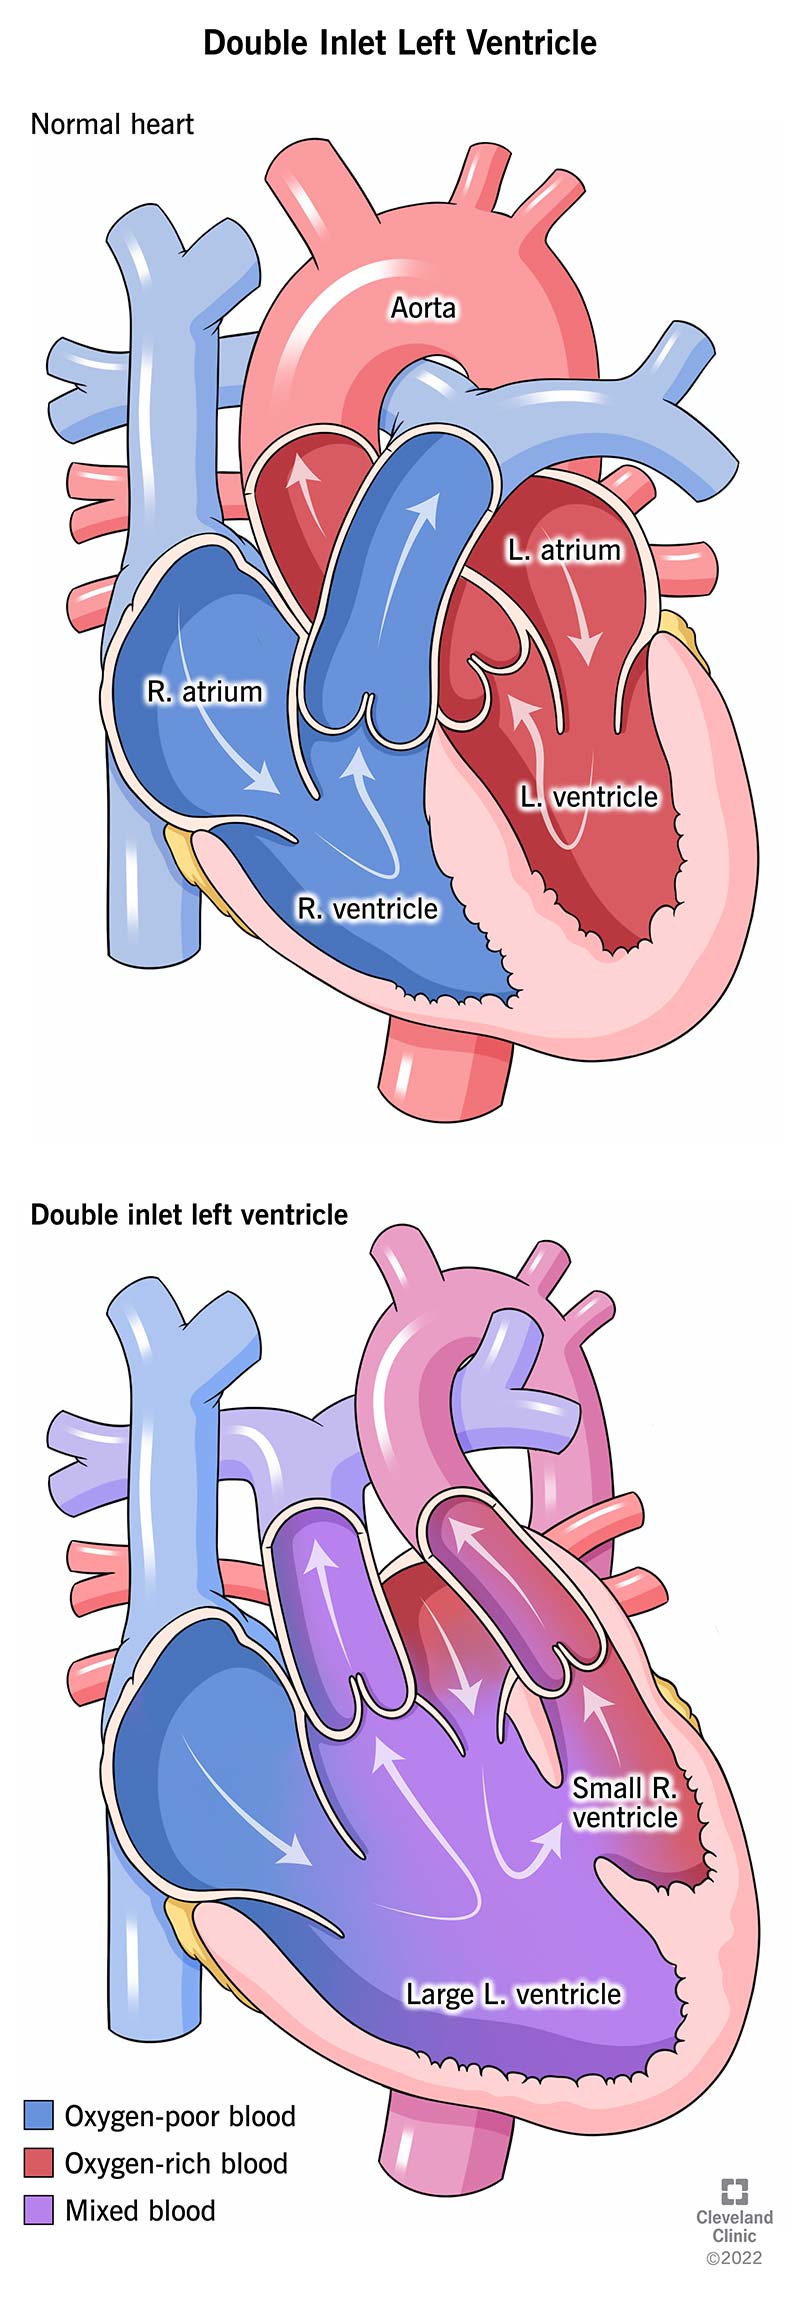 Con il ventricolo sinistro a doppia entrata, entrambi gli atri del bambino forniscono sangue al ventricolo sinistro.